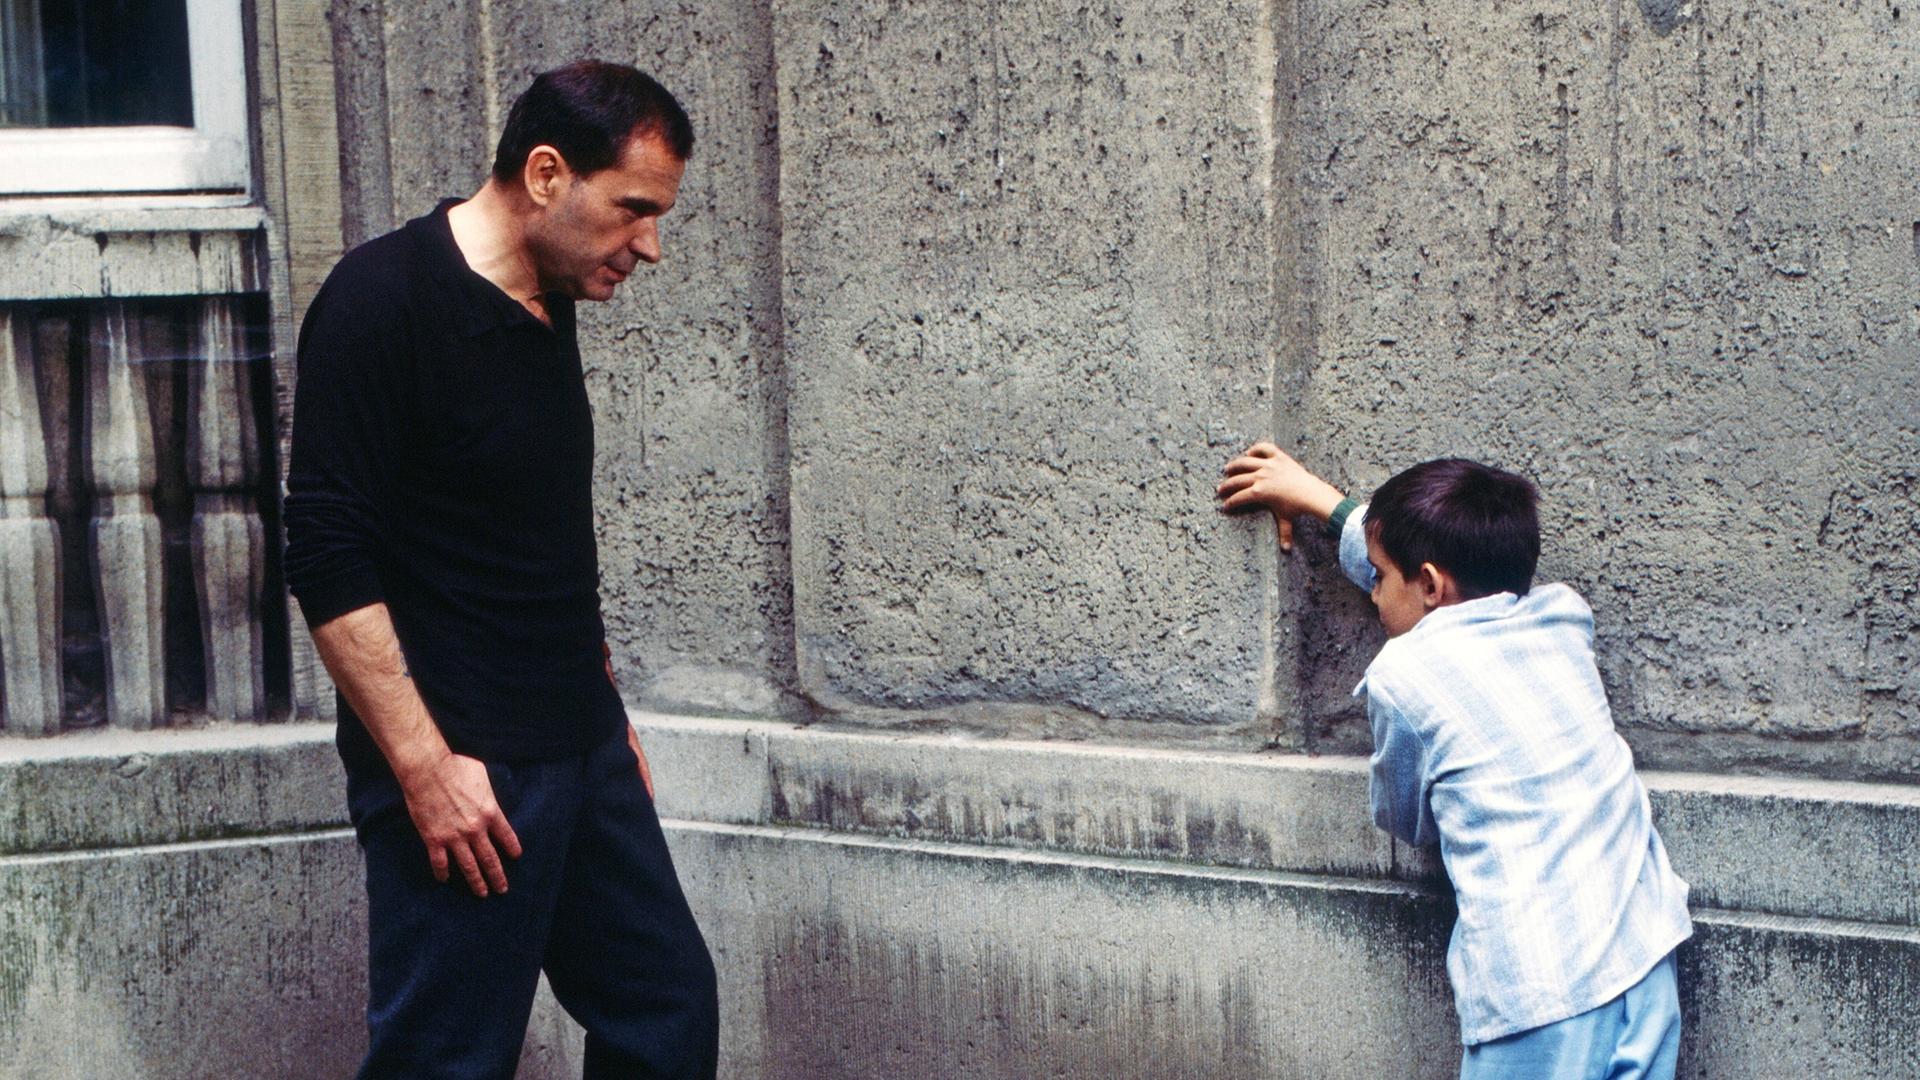 Ein Mann und ein Junge stehen sich gegenüber und lehnen an einer Wand. Eine Szene aus dem Film "Der Boxer".